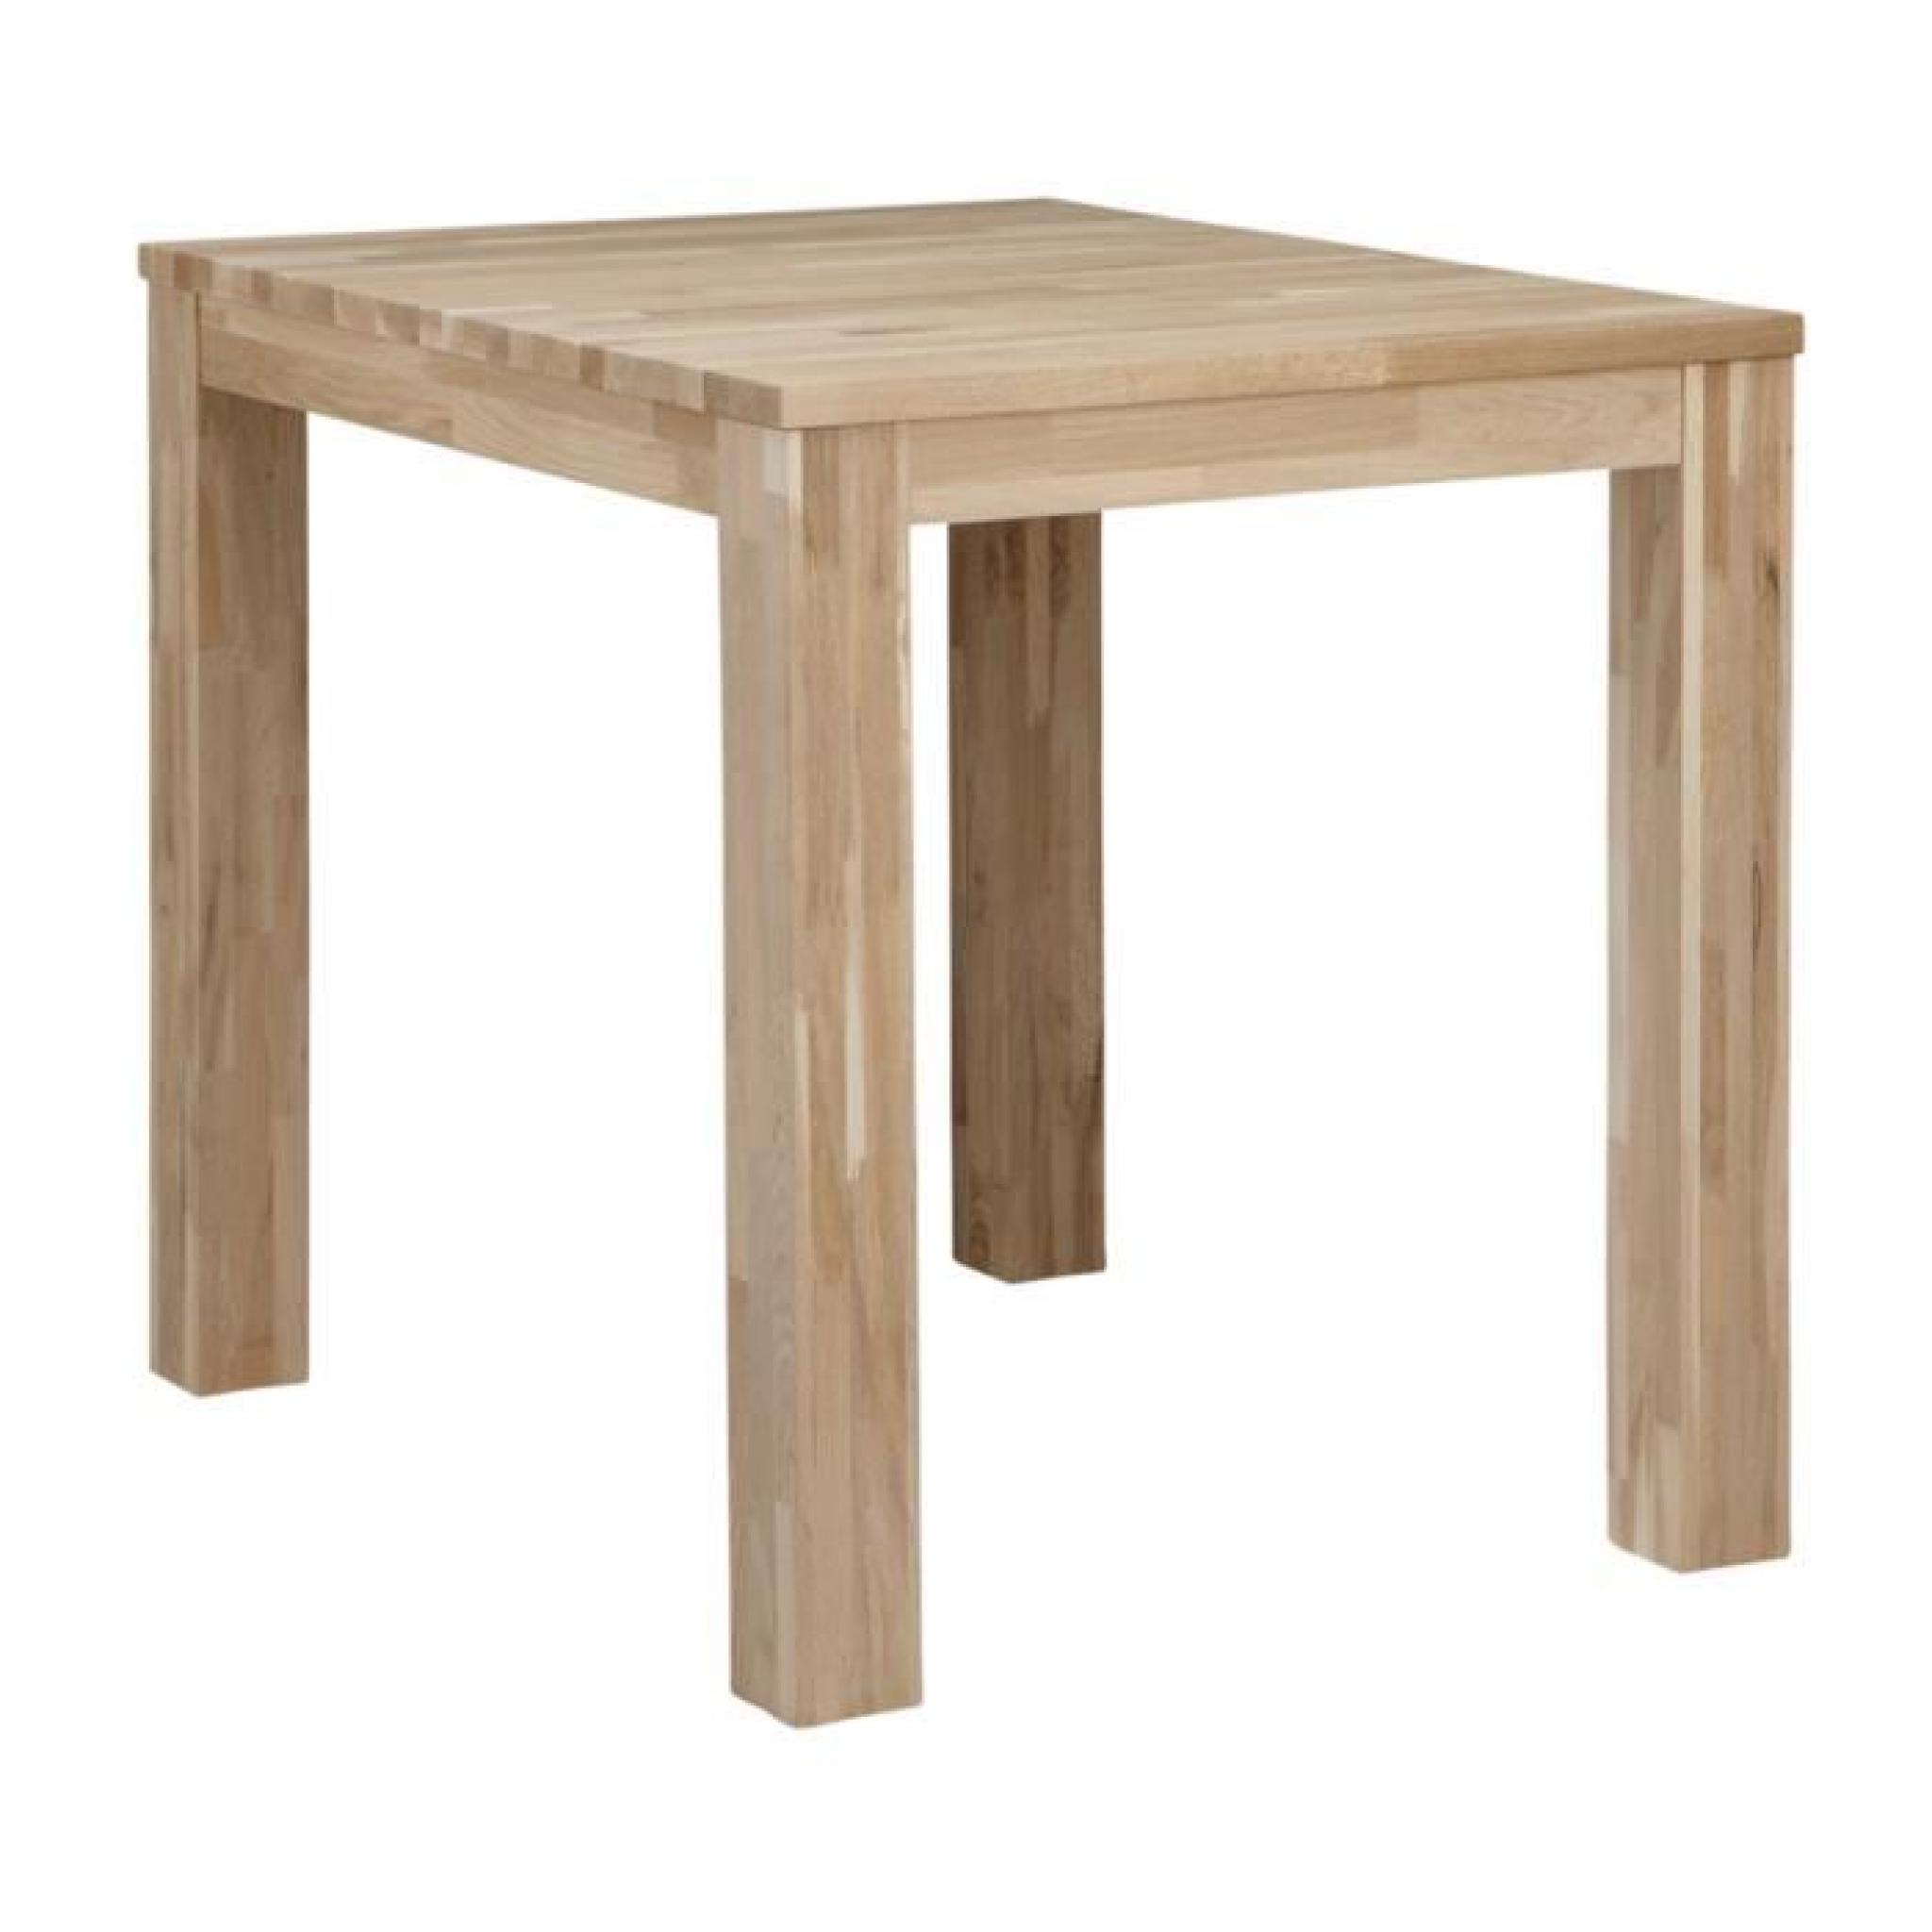 Table à manger chêne massif pieds 8 x 8 cm, H 78 x L 85 x P 85 cm